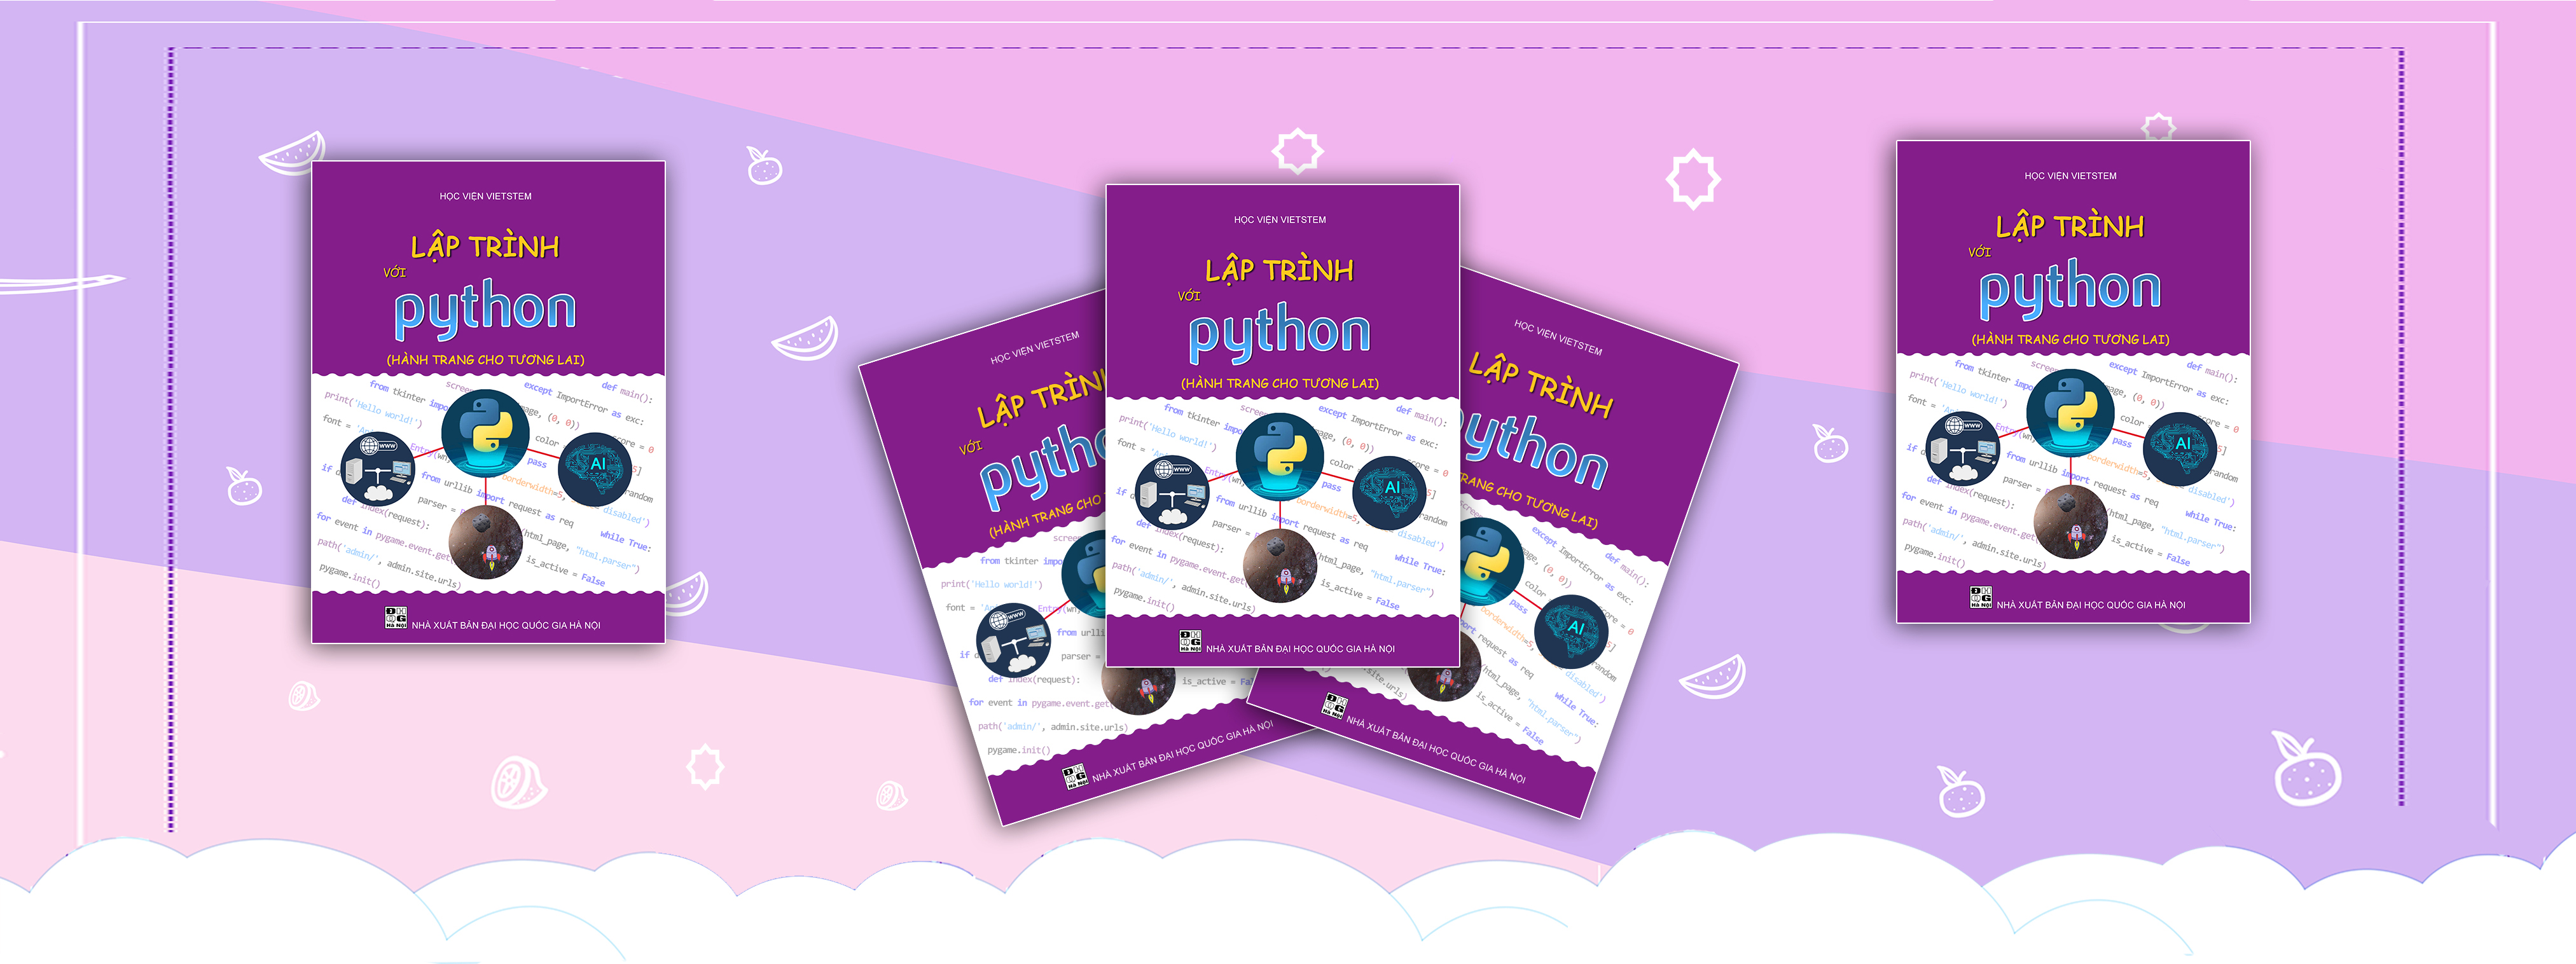 <h2>Giới thiệu về ng&ocirc;n ngữ lập tr&igrave;nh Python</h2>
Theo chỉ số phổ biến của ng&ocirc;n ngữ lập tr&igrave;nh (PYPL) trong năm 2022, Python hiện xếp đầu ti&ecirc;n tr&ecirc;n bảng xếp hạng tr&ecirc;n cả Java v&agrave; JavaScript. Python l&agrave; ng&ocirc;n ngữ lập tr&igrave;nh mạnh mẽ, hiện đại, dễ học v&agrave; được y&ecirc;u th&iacute;ch nhất tr&ecirc;n thế giới, n&oacute; đặc biệt chiếm ưu thế trong lĩnh vực khoa học m&aacute;y t&iacute;nh như Tr&iacute; tuệ nh&acirc;n tạo (Artificial Intelligence, Học m&aacute;y (Machine Learning), Đồ họa v&agrave; xử l&yacute; ảnh (Digital Image Processing),...<br />
&nbsp;
<h2>Mục đ&iacute;ch của cuốn s&aacute;ch</h2>
- Gi&uacute;p người đọc l&agrave;m chủ những kiến thức cơ bản về lập tr&igrave;nh n&oacute;i chung v&agrave; ng&ocirc;n ngữ lập tr&igrave;nh Python n&oacute;i ri&ecirc;ng một c&aacute;ch nhanh ch&oacute;ng v&agrave; hứng th&uacute; nhất.<br />
- Gi&uacute;p người đọc c&oacute; c&aacute;i nh&igrave;n tổng quan về một sản phẩm c&ocirc;ng nghệ th&ocirc;ng tin, từ việc h&igrave;nh th&agrave;nh &yacute; tưởng, lập tr&igrave;nh tạo ra n&oacute; đến đ&oacute;ng g&oacute;i v&agrave; đưa n&oacute; đến người d&ugrave;ng.<br />
- Gi&uacute;p c&aacute;c bạn học sinh, sinh vi&ecirc;n c&oacute; một c&ocirc;ng cụ mạnh mẽ hỗ trợ học tập c&aacute;c m&ocirc;n học kh&aacute;c trong qu&aacute; tr&igrave;nh nghi&ecirc;n cứu, t&iacute;nh to&aacute;n, m&ocirc; phỏng v&agrave; chia sẻ kết quả với cộng đồng.
<h2>Nội dung của cuốn s&aacute;ch</h2>
Cuốn s&aacute;ch gồm 06 chương: Mỗi chương l&agrave; một dự &aacute;n l&yacute; th&uacute; c&oacute; t&iacute;nh thực tiễn cao từ đơn giản đến phức tạp gi&uacute;p người đọc từng bước l&agrave;m chủ ng&ocirc;n ngữ lập tr&igrave;nh python, đồng thời nắm bắt được hiện trạng cũng như xu hướng đang diễn ra của c&aacute;c sản phẩm m&agrave; lập tr&igrave;nh vi&ecirc;n c&oacute; thể tạo ra trong cuộc sống.<br />
- Chương 1: Giới thiệu về ng&ocirc;n ngữ lập tr&igrave;nh Python, hướng dẫn c&agrave;i đặt v&agrave; giới thiệu c&aacute;c kiến thức cơ bản nhất để l&agrave;m việc với Python.<br />
- Chương 2: T&igrave;m hiểu lập tr&igrave;nh đồ họa với thư viện Pygame v&agrave; tạo ra tr&ograve; chơi L&aacute;i t&agrave;u vũ trụ, qua đ&oacute; cung cấp kiến thức cơ bản về lập tr&igrave;nh như v&ograve;ng lặp, sự kiện, cấu tr&uacute;c rẽ nh&aacute;nh&hellip;<br />
- Chương 3: Lập tr&igrave;nh tạo một chiếc m&aacute;y t&iacute;nh Casio với c&aacute;c chức năng cơ bản th&ocirc;ng qua thư viện giao diện đồ họa người d&ugrave;ng (GUI &ndash; Graphical User Interface) Tkinter của Python.<br />
- Chương 4: Cung cấp kiến thức cơ bản về c&aacute;ch website hoạt động trong thực tế v&agrave; một ứng dụng của Python x&acirc;y dựng website. Người đọc sẽ được hướng dẫn để tạo một website thu thập một số th&ocirc;ng tin về gi&aacute; v&agrave;ng từ c&aacute;c trang tin tức kh&aacute;c.<br />
- Chương 5: T&igrave;m hiểu về Tr&iacute; tuệ nh&acirc;n tạo v&agrave; ứng dụng c&aacute;c thư viện c&oacute; sẵn để x&acirc;y dựng một ChatBot với Python.<br />
- Phụ lục: Giới thiệu về c&aacute;c nội dung mở rộng:<br />
&nbsp;&nbsp;&nbsp;&nbsp;&nbsp;+ Kiến thức n&acirc;ng cao như mảng nhiều chiều, thuật to&aacute;n đệ quy, thuật to&aacute;n sắp xếp&hellip;&nbsp;<br />
&nbsp;&nbsp;&nbsp;&nbsp;&nbsp;+ Debugging v&agrave; Testing trong lập tr&igrave;nh.<br />
&nbsp;&nbsp;&nbsp;&nbsp;&nbsp;+ Kiến thức về m&atilde; h&oacute;a, Blockchain v&agrave; tiền ảo.<br />
&nbsp;&nbsp;&nbsp;&nbsp;&nbsp;+ C&aacute;ch xuất chương tr&igrave;nh th&agrave;nh ứng dụng di động v&agrave; đăng tải l&ecirc;n kho ứng dụng Google Play v&agrave; App Store.<br />
&nbsp;&nbsp;&nbsp;&nbsp;&nbsp;+ Th&ocirc;ng tin về c&aacute;ch xuất bản một website l&ecirc;n mạng Internet.<br />
&nbsp;&nbsp;&nbsp;&nbsp;&nbsp;+ Ứng dụng Generative AI (ChatGPT, Bing, Bard...) trong học lập tr&igrave;nh.<br />
&nbsp;&nbsp;&nbsp;&nbsp;&nbsp;+ Cộng đồng lập tr&igrave;nh vi&ecirc;n tr&ecirc;n thế giới
<h2>Đối tượng sử dụng s&aacute;ch</h2>
Học sinh, sinh vi&ecirc;n, gi&aacute;o vi&ecirc;n muốn t&igrave;m hiểu về lập tr&igrave;nh Python. Cuốn s&aacute;ch được x&acirc;y dựng để người học c&oacute; thể trực tiếp học Python m&agrave; kh&ocirc;ng nhất thiết phải biết ng&ocirc;n ngữ lập tr&igrave;nh n&agrave;o kh&aacute;c trước đ&oacute;. C&aacute;c kiến thức cần thiết về lập tr&igrave;nh v&agrave; c&ocirc;ng nghệ th&ocirc;ng tin sẽ được lồng gh&eacute;p trong từng b&agrave;i khi cần thiết.<br />
<br />
----------------------------<br />
Bảo h&agrave;nh (1 th&aacute;ng) do lỗi nh&agrave; sản xuất<br />
<br />
Mọi thắc mắc về c&aacute;c sản phẩm của VIETSTEM li&ecirc;n hệ qua Chat để được hỗ trợ v&agrave; giải đ&aacute;p.<br />
<br />
Gi&aacute; sản phẩm đ&atilde; bao gồm thuế theo luật hiện h&agrave;nh. Tuy nhi&ecirc;n tuỳ v&agrave;o từng loại sản phẩm hoặc phương thức, địa chỉ giao h&agrave;ng m&agrave; c&oacute; thể ph&aacute;t sinh th&ecirc;m chi ph&iacute; kh&aacute;c như ph&iacute; vận chuyển, phụ ph&iacute; h&agrave;ng cồng kềnh, ...<br />
&nbsp;
<h1>C&aacute;c sản phẩm li&ecirc;n quan</h1>
<a href="https://vietstem.com/cong-cu-lap-trinh/luyen-thi-tin-hoc-tre-voi-Python-khoi-THCS-">S&aacute;ch luyện thi hội thi THT với Python</a><br />
<a href="https://vietstem.com/cong-cu-lap-trinh/coding-10-lap-trinh-voi-python">S&aacute;ch Coding 10 lập tr&igrave;nh với Python</a><br />
<a href="https://vietstem.com/khoa-hoc/lap-trinh-python-co-ban">Lập tr&igrave;nh với Python Cơ bản</a><br />
<a href="https://vietstem.com/khoa-hoc/lap-trinh-python-zoom">Kh&oacute;a S&aacute;ng tạo với lập tr&igrave;nh Python (Cơ bản, N&acirc;ng cao, Chuy&ecirc;n s&acirc;u)</a><br />
<br />
----------------------------<br />
VIETSTEM chuy&ecirc;n cung cấp s&aacute;ch: <a href="https://vietstem.com/cong-cu-lap-trinh?type=giao-trinh">lập tr&igrave;nh</a>, <a href="https://vietstem.com/cong-cu-lap-trinh">c&ocirc;ng nghệ, kỹ năng sống; c&ocirc;ng cụ hỗ trợ học tập</a> STEM như: robot mbot, codey, ...<br />
- VIETSTEM c&oacute; ch&iacute;nh s&aacute;ch ưu đ&atilde;i tốt nhất d&agrave;nh cho nh&agrave; s&aacute;ch,c&ocirc;ng ty ph&acirc;n phối, CTV v&agrave; Thầy c&ocirc; đặt s&aacute;ch cho học sinh.<br />
- C&aacute;c bạn muốn đăng k&yacute; học lập tr&igrave;nh qua zoom<br />
Vui l&ograve;ng li&ecirc;n hệ: 0963.107.887 để được hỗ trợ nhanh nhất.<br />
- Cam kết 100% sản phẩm s&aacute;ch ch&iacute;nh h&atilde;ng, cam kết đổi trả nếu sản phẩm đến tay kh&aacute;ch h&agrave;ng gặp sự cố hoặc sai, nhầm do NSX.<br />
#python, #laptrinhpython,&nbsp; #vietstem, #sachlaptrinhpython, #khoahocpythononline,&nbsp; #hoahocpython, #congnghethongtin
<div style="text-align:center"><br />
<img alt="" src="https://i.imgur.com/qcCtGEc.jpg" style="width:45%" />&nbsp;<img alt="" src="https://i.imgur.com/RGNsJWH.jpg" style="width:45%" /><img alt="" src="https://i.imgur.com/MlSDzWF.jpg" style="width:45%" />&nbsp;<img alt="Chương I sách Lập trình với Python" src="https://i.imgur.com/vmKobHV.jpg" style="width:45%" /><img alt="Chương II sách Lập trình với Python" src="https://i.imgur.com/UOL5VPL.jpg" style="width:45%" />&nbsp;<img alt="Chương III sách Lập trình với Python" src="https://i.imgur.com/n3jqcXy.jpg" style="width:45%" /><img alt="Chương IV sách Lập trình với Python" src="https://i.imgur.com/XeAQSuF.jpg" style="width:45%" /><img alt="Chương IV sách Lập trình với Python" src="https://i.imgur.com/rP9tvnM.jpg" style="width:45%" /><img alt="Chương V sách Lập trình với Python" src="https://i.imgur.com/PIlKk9R.jpg" style="width:45%" /></div>
